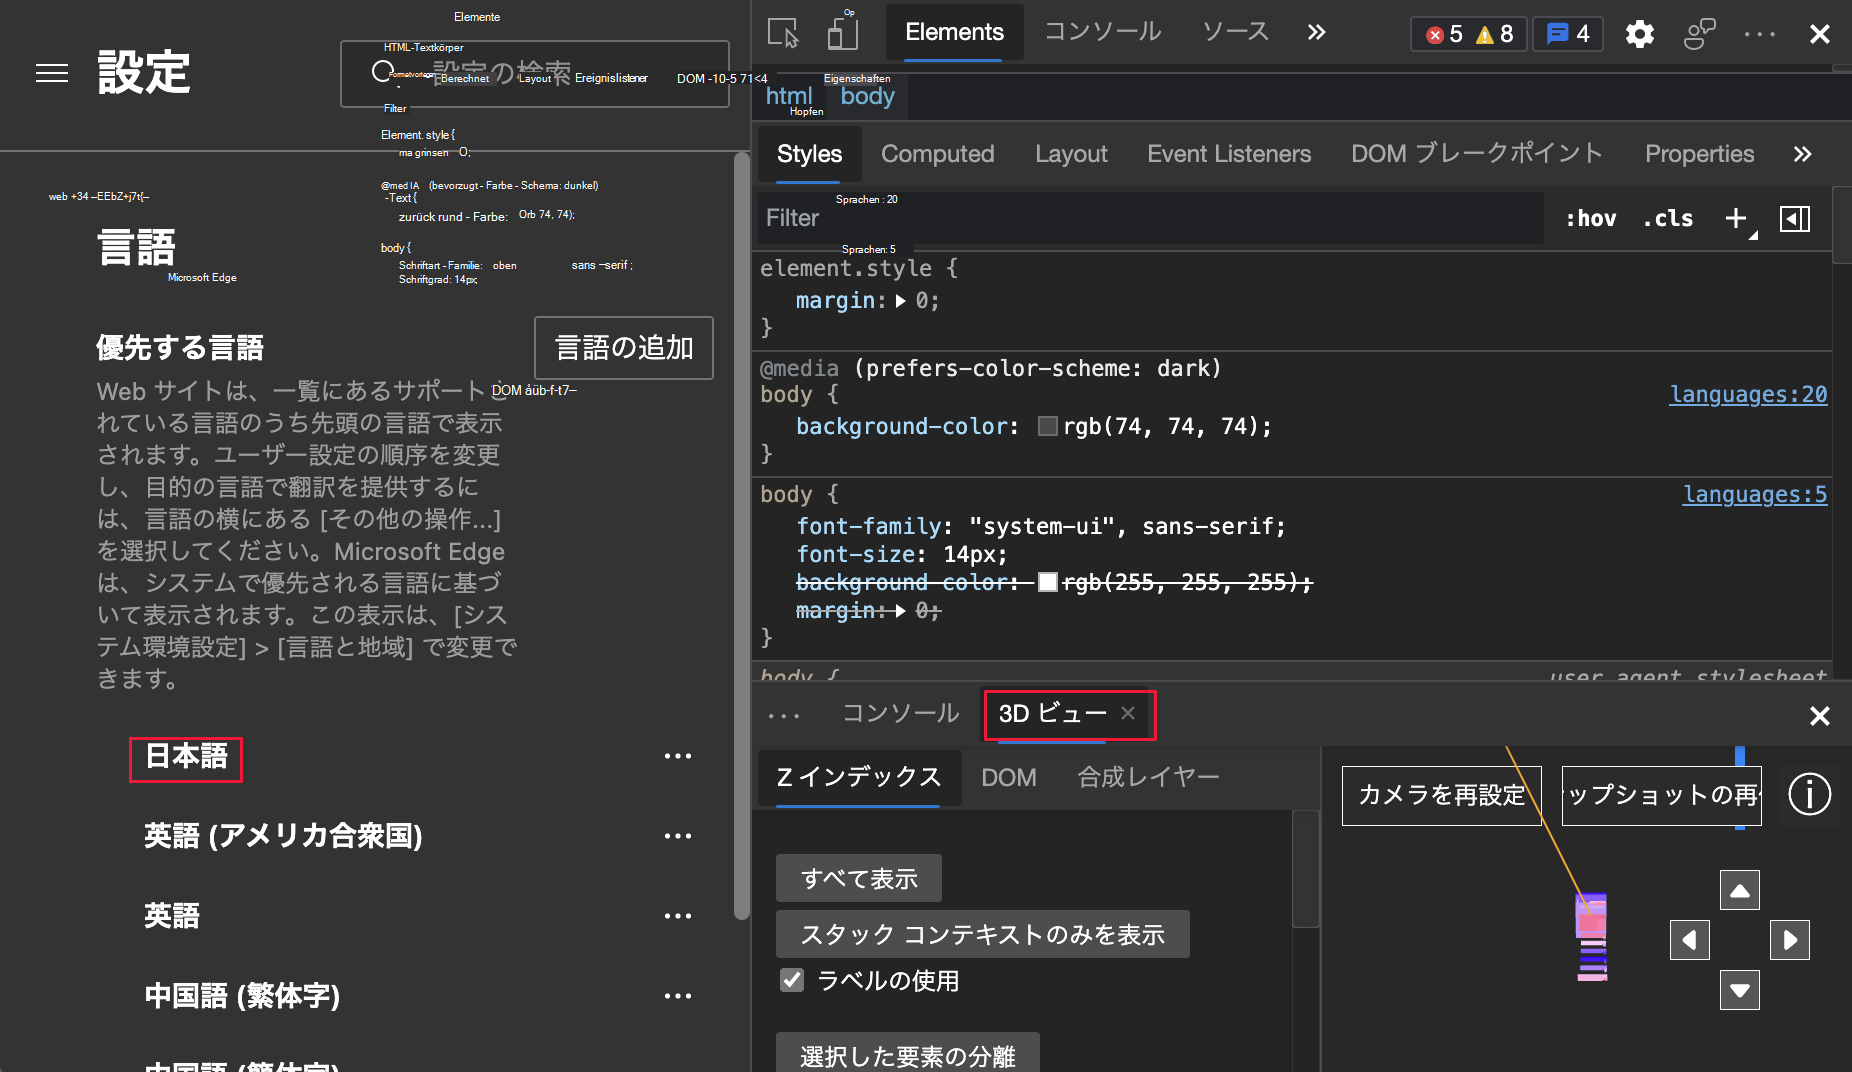 Microsoft Edge-Browser und DevTools auf Japanisch festgelegt